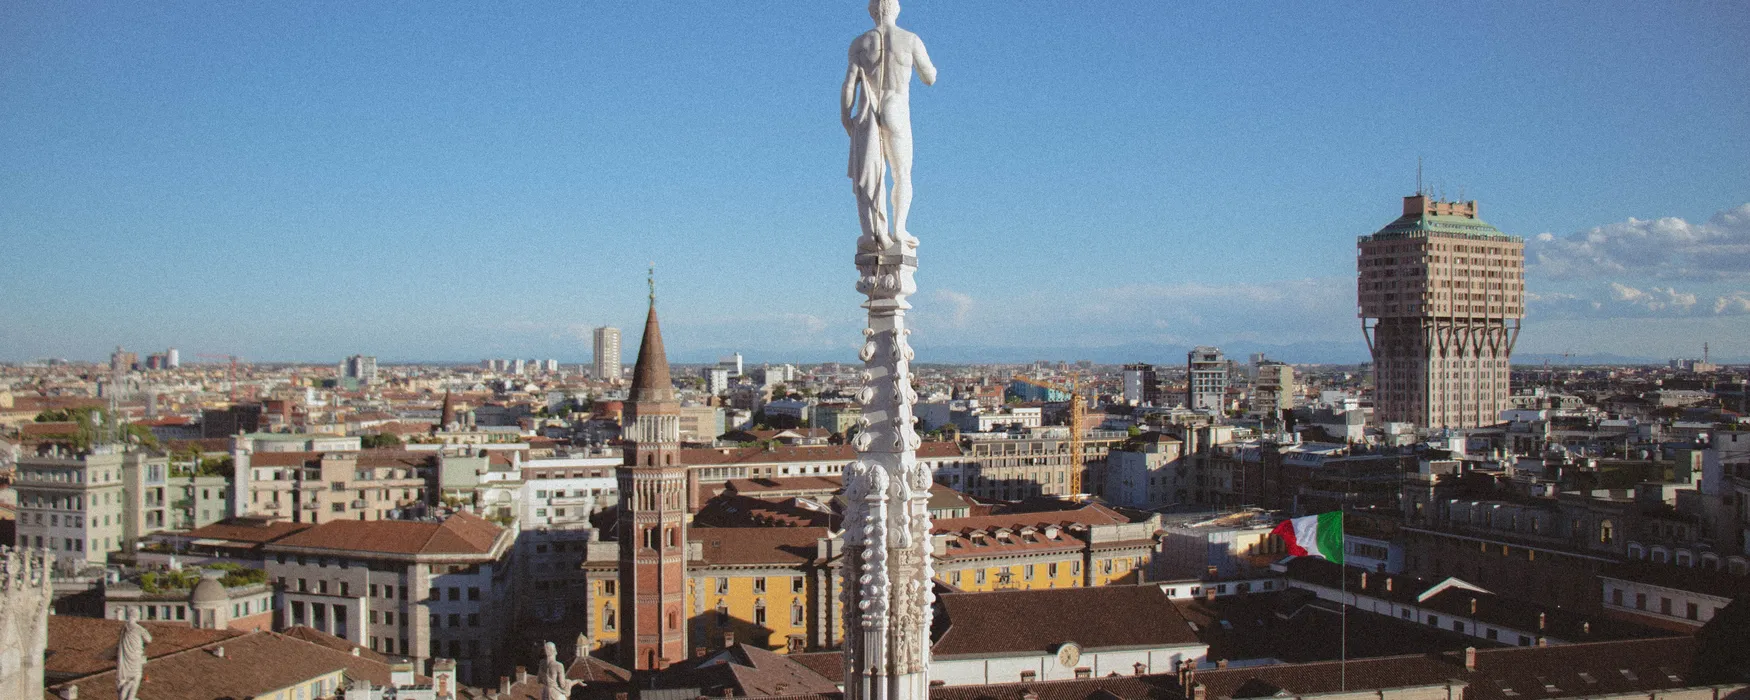 Un fantastico punto panoramico a Milano da non perdere 